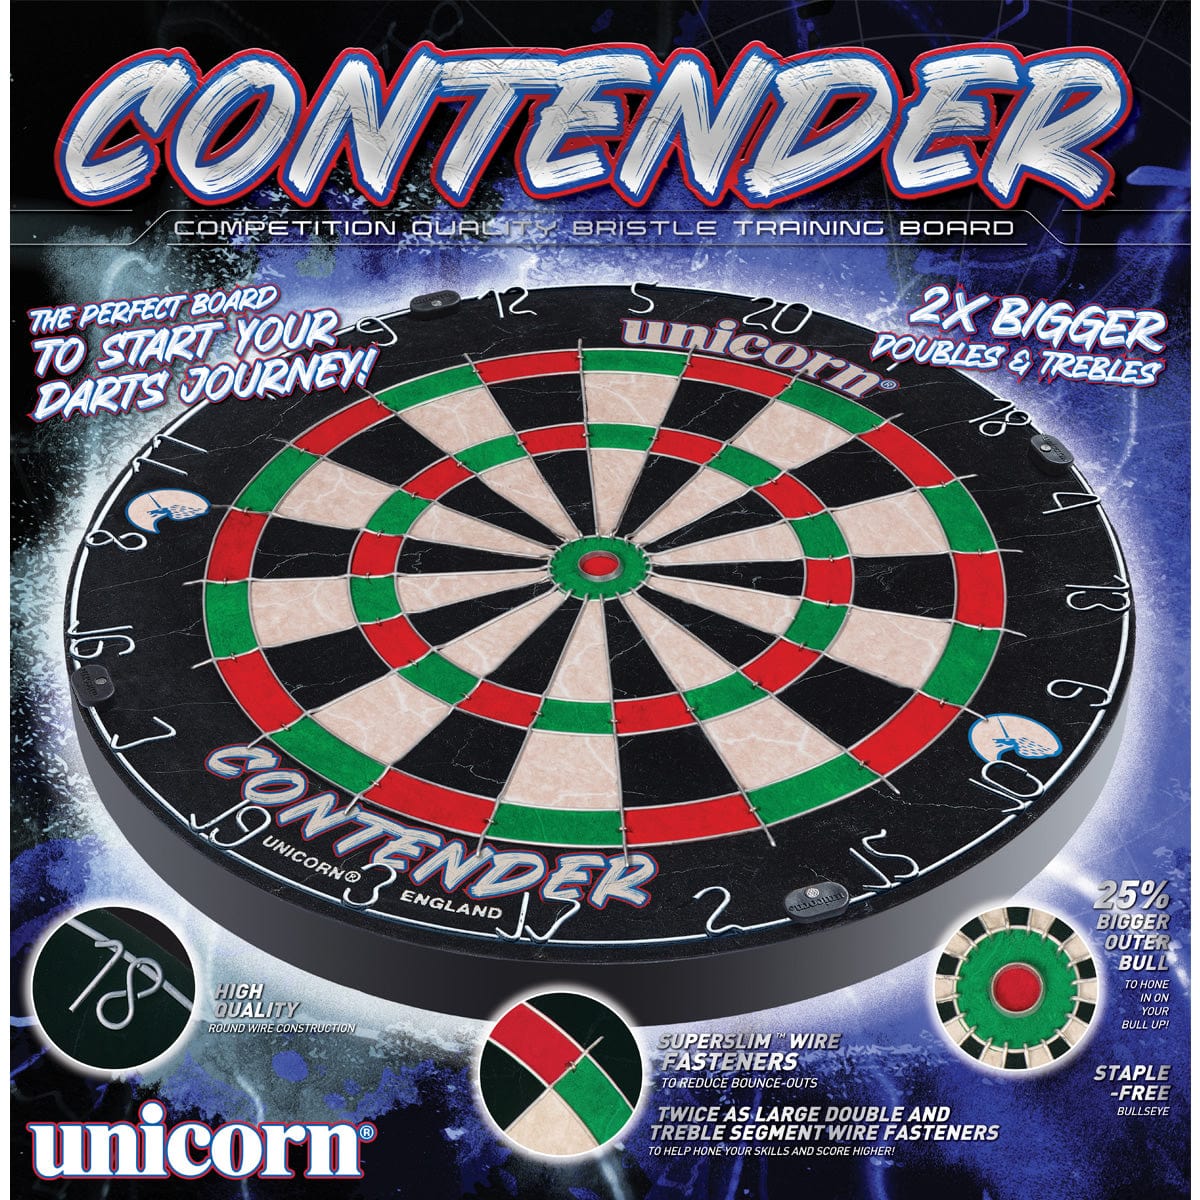 Unicorn Contender Trainer Dartboard - 2x Bigger Trebles & Doubles